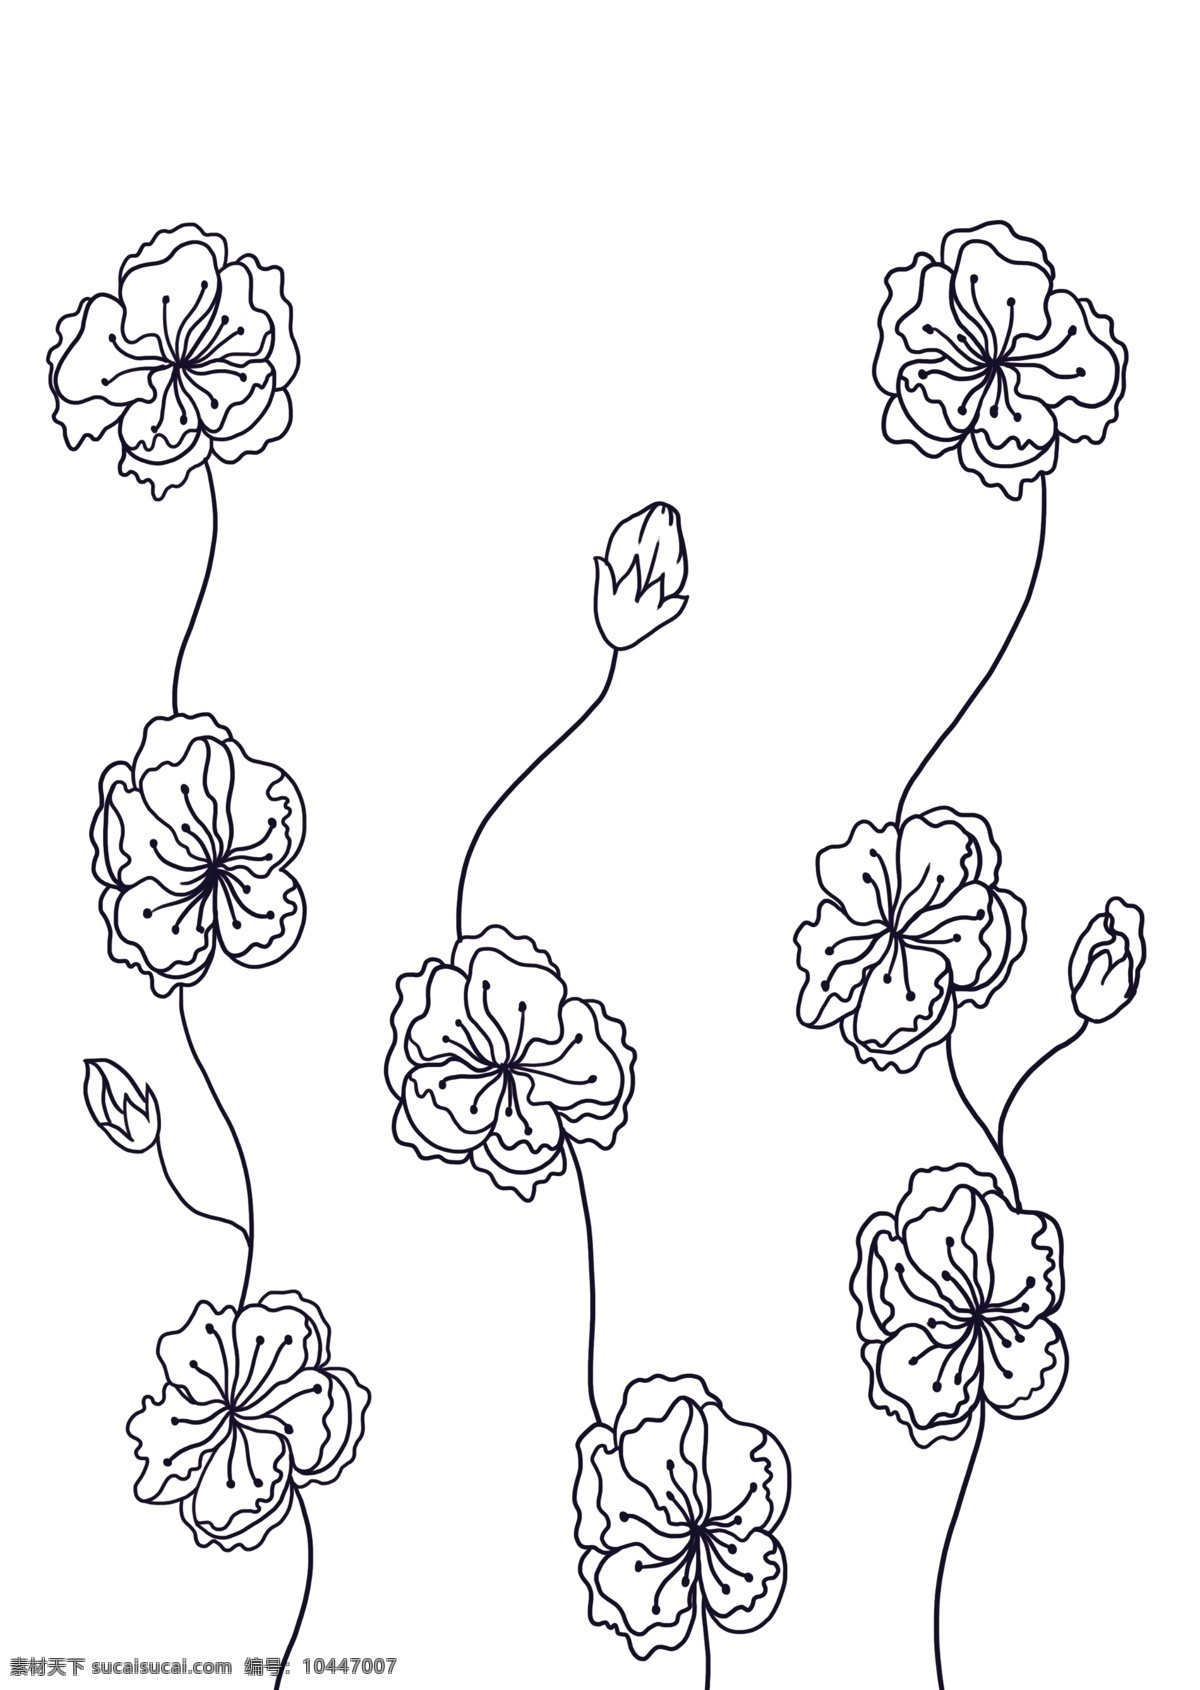 线条花边图案 两色 二色 黑白 简单 色块 花纹 图案 纯色 手绘 绘画图 彩绘 雕花 包装 印花 花边 单色 单线 线条